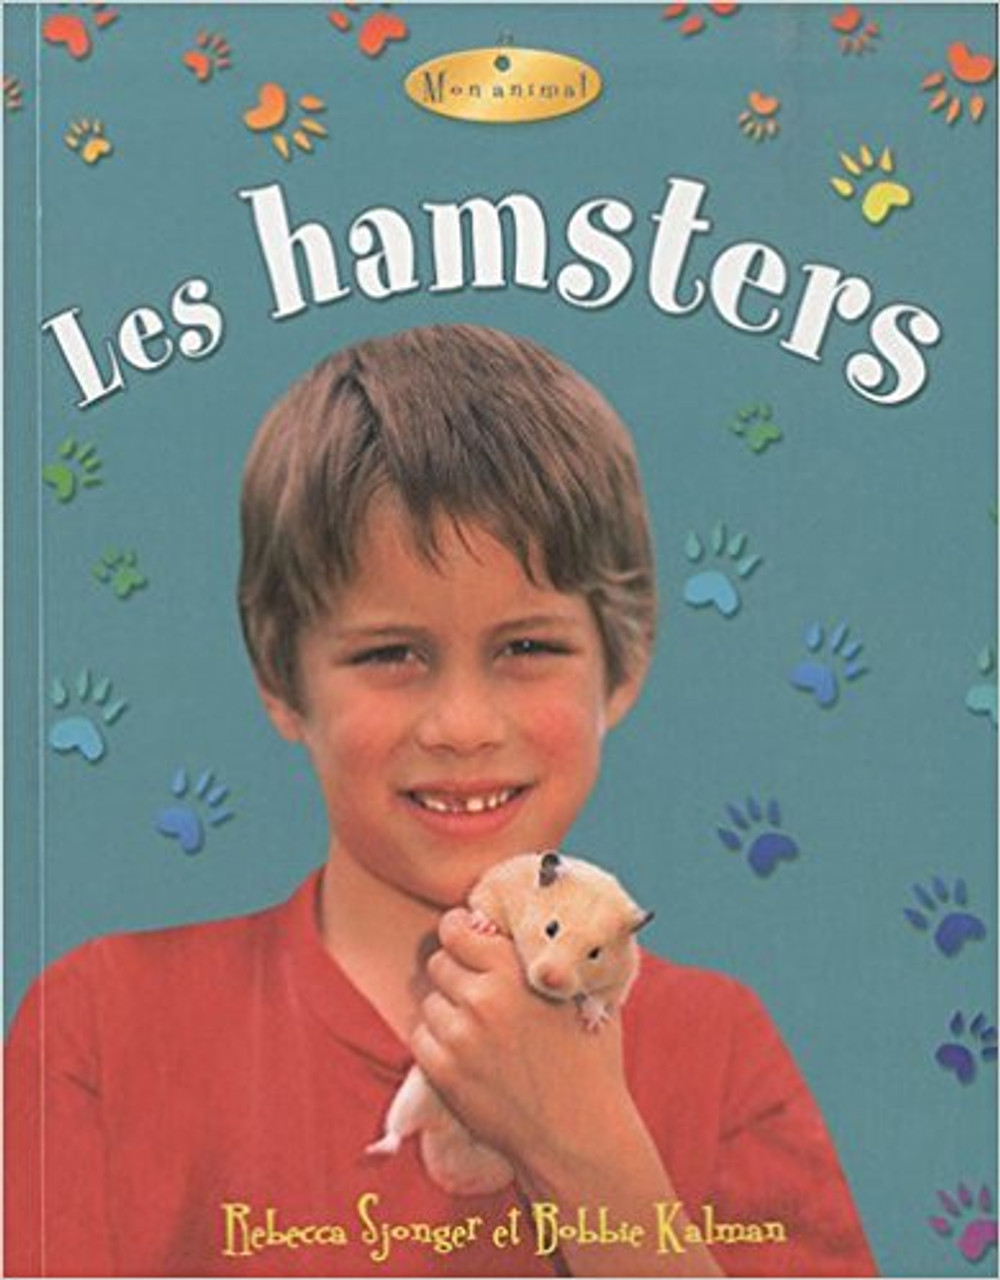 Les Hamsters by Rebecca Sjonger